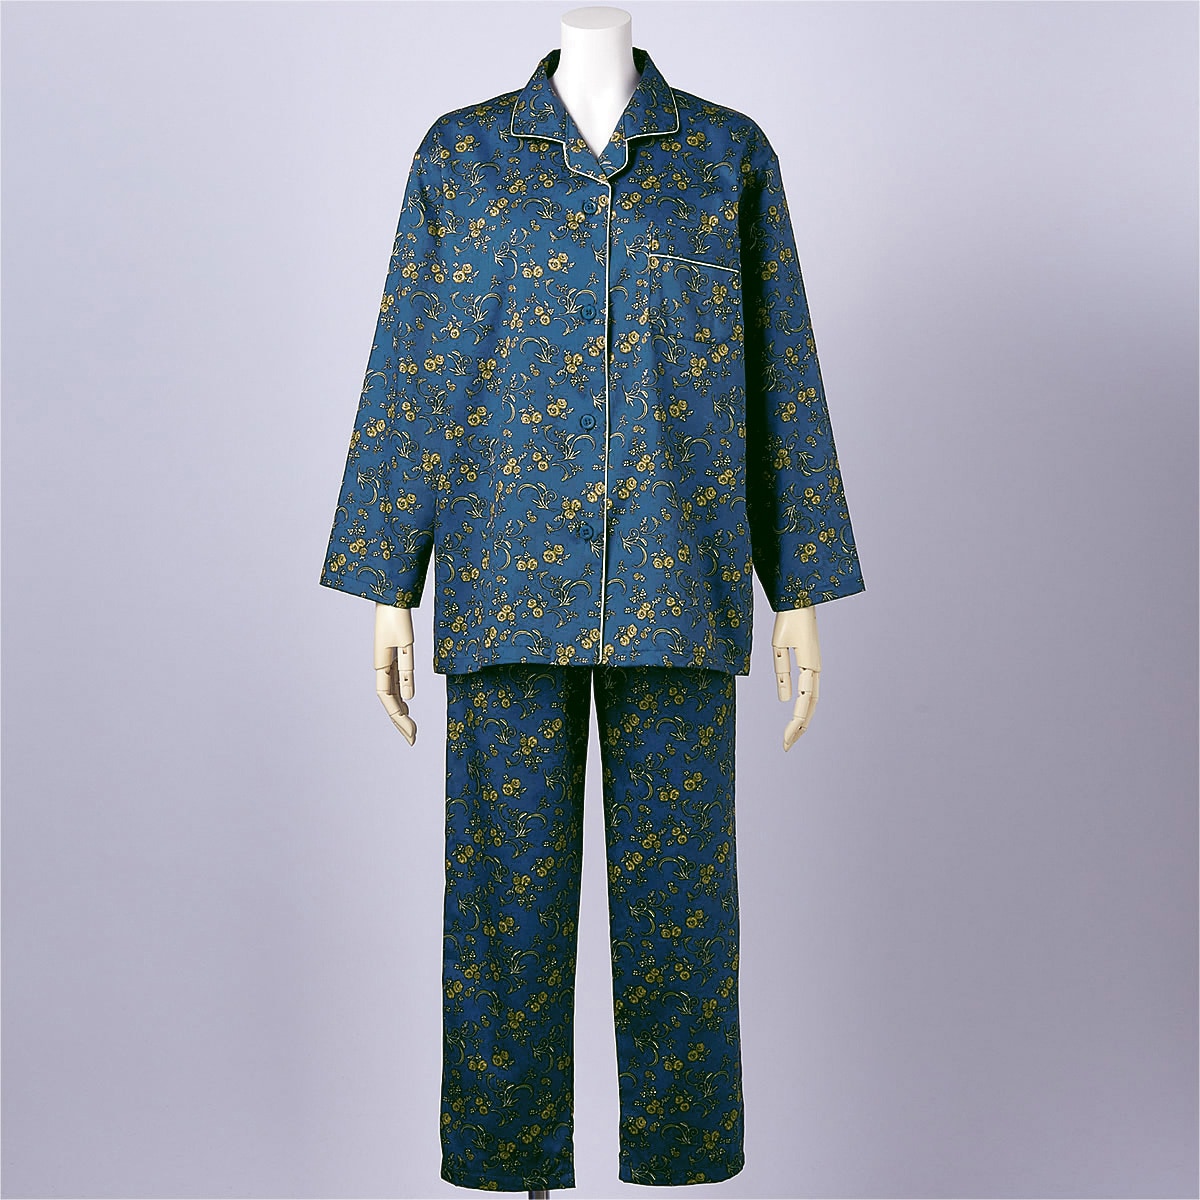 日本製のサテンパジャマ(綿100%・遠州捺染) - ファッション通販なら 